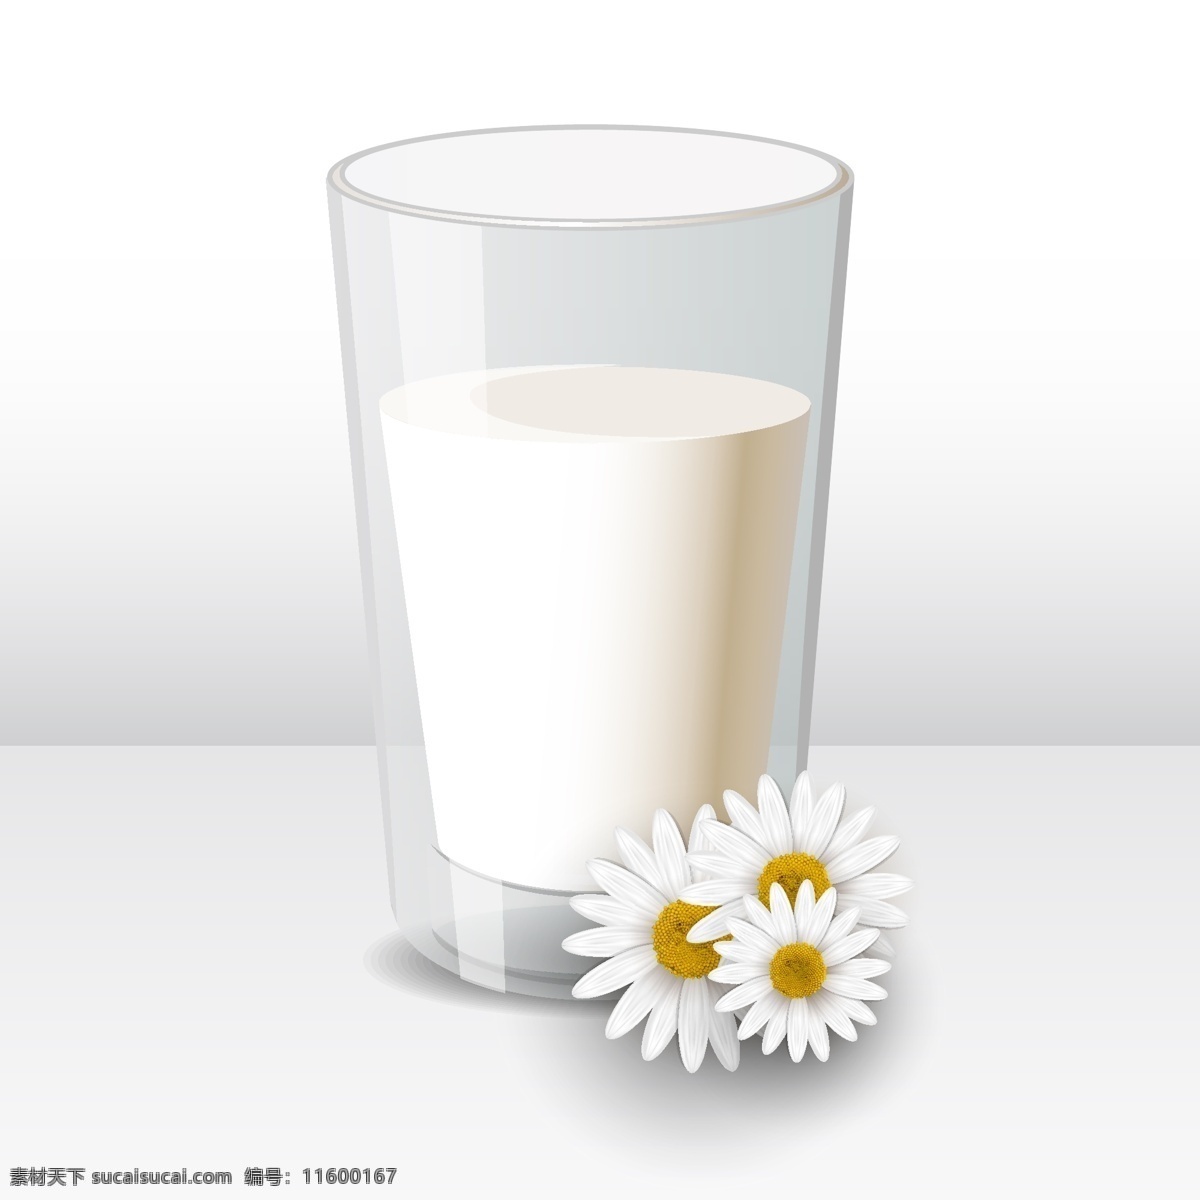 牛奶 牛奶图标 牛奶设计 牛奶标签 牛奶商标 牛奶logo 牛奶标志 抽象设计 卡通背景 矢量设计 卡通设计 艺术设计 餐饮美食 生活百科